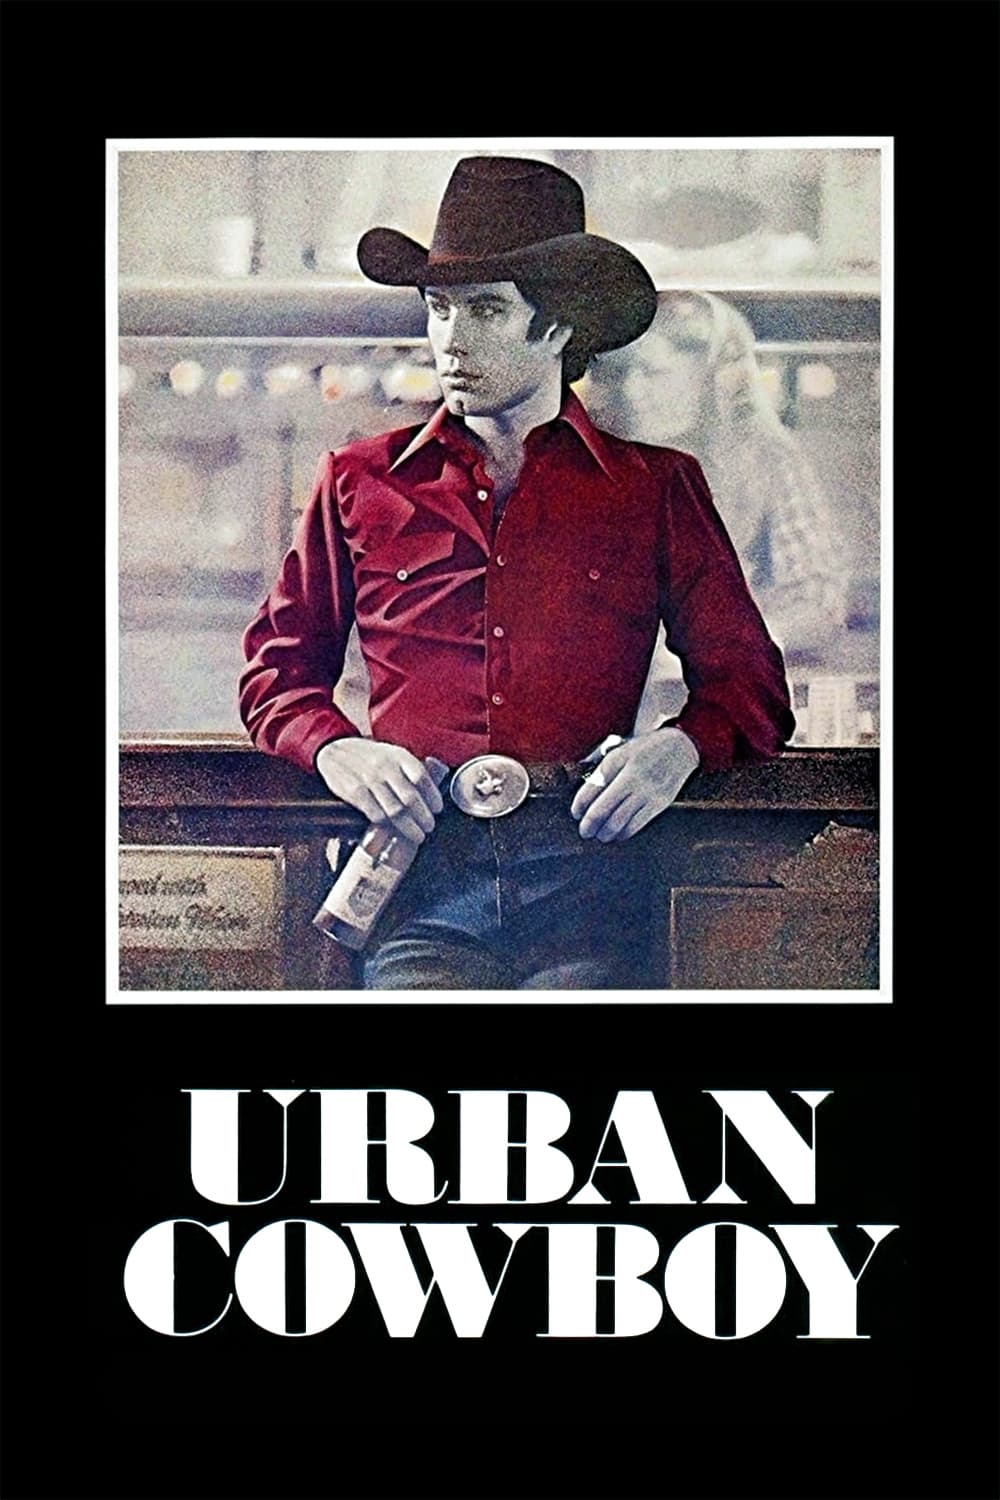 Cowboy de ciudad (1980)